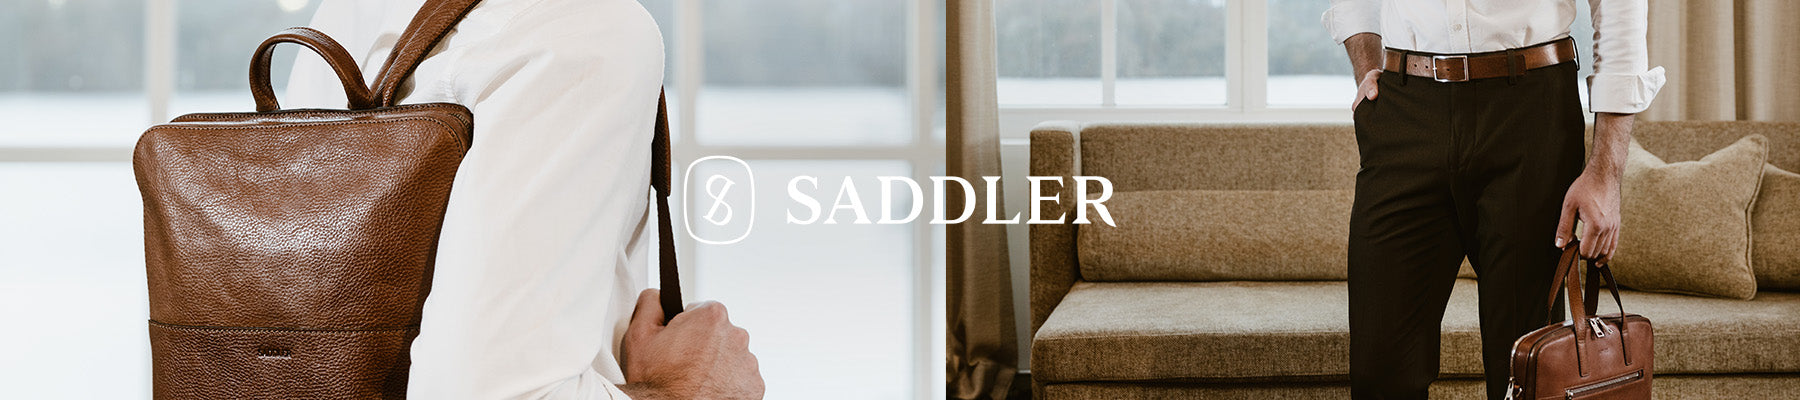 Saddler - Men